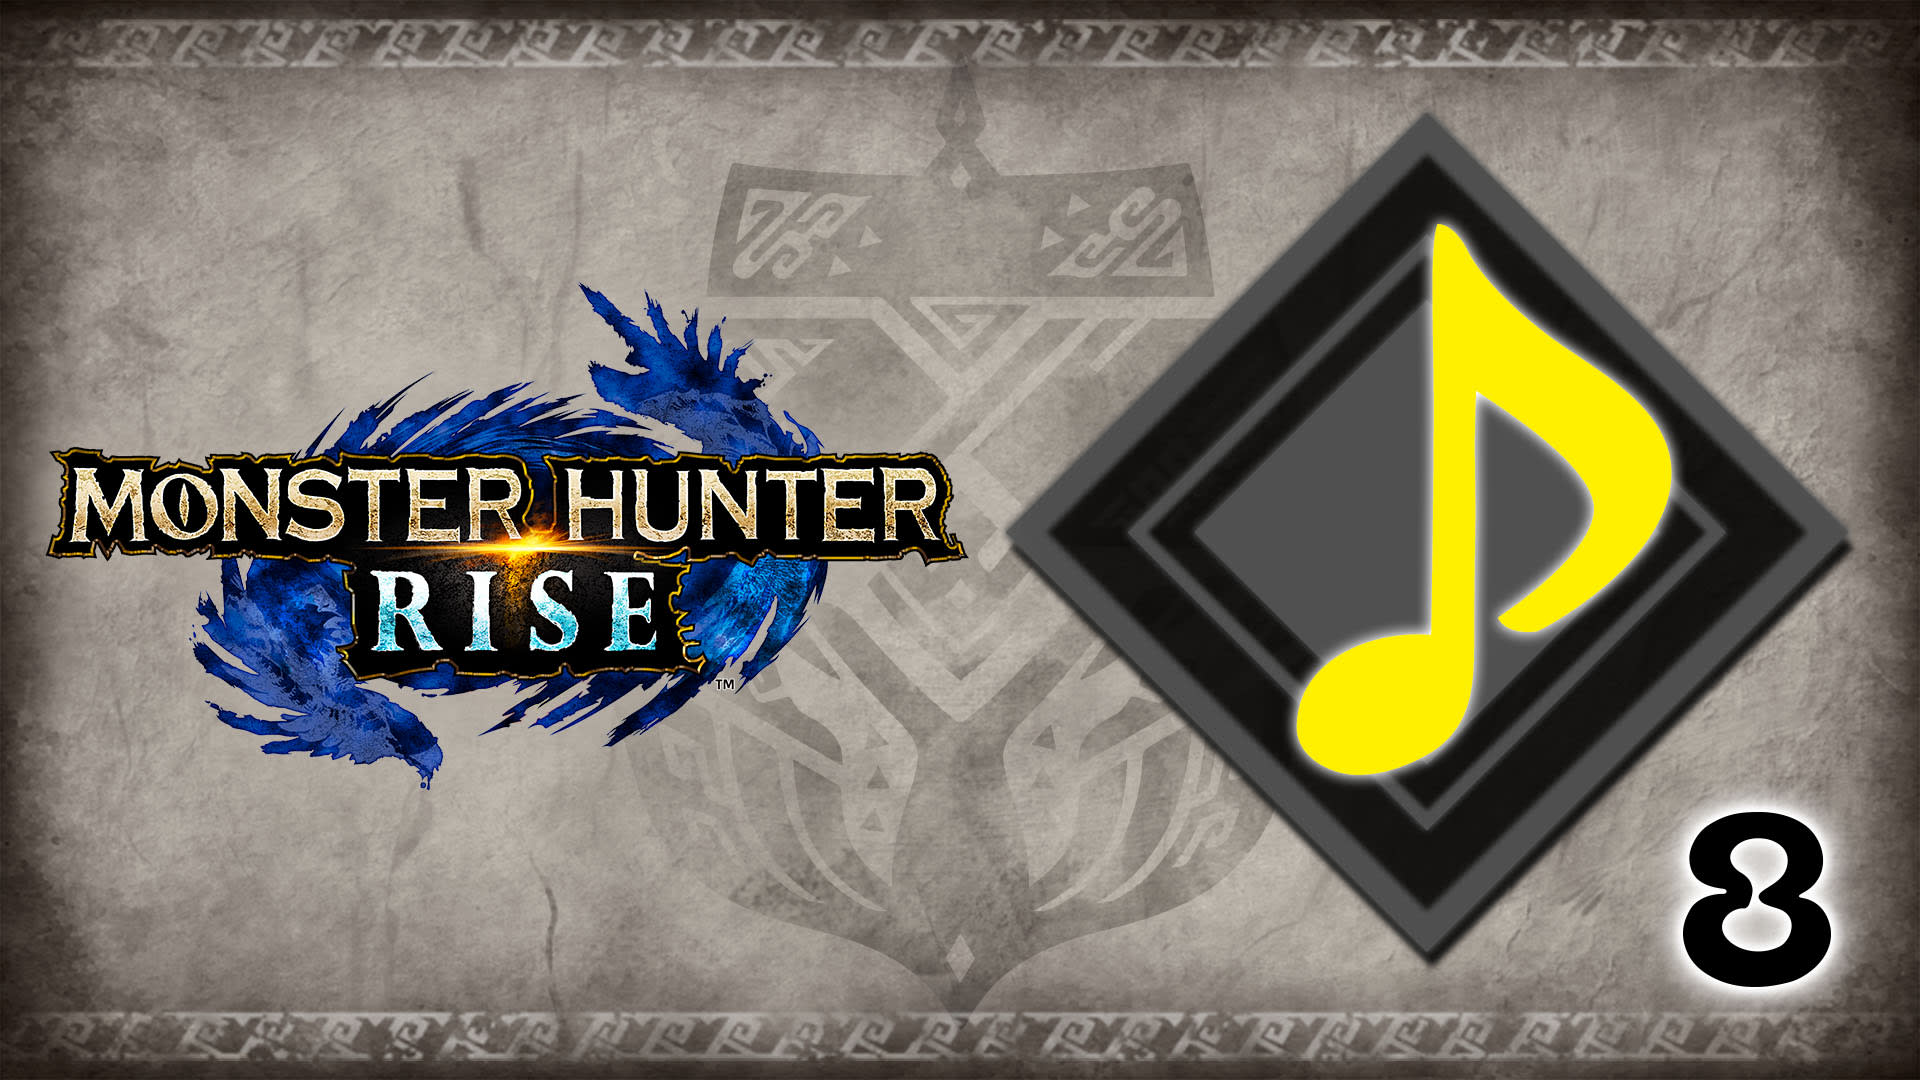 Músicas de fundo "Monster Hunter Series Bases Pt. 2"